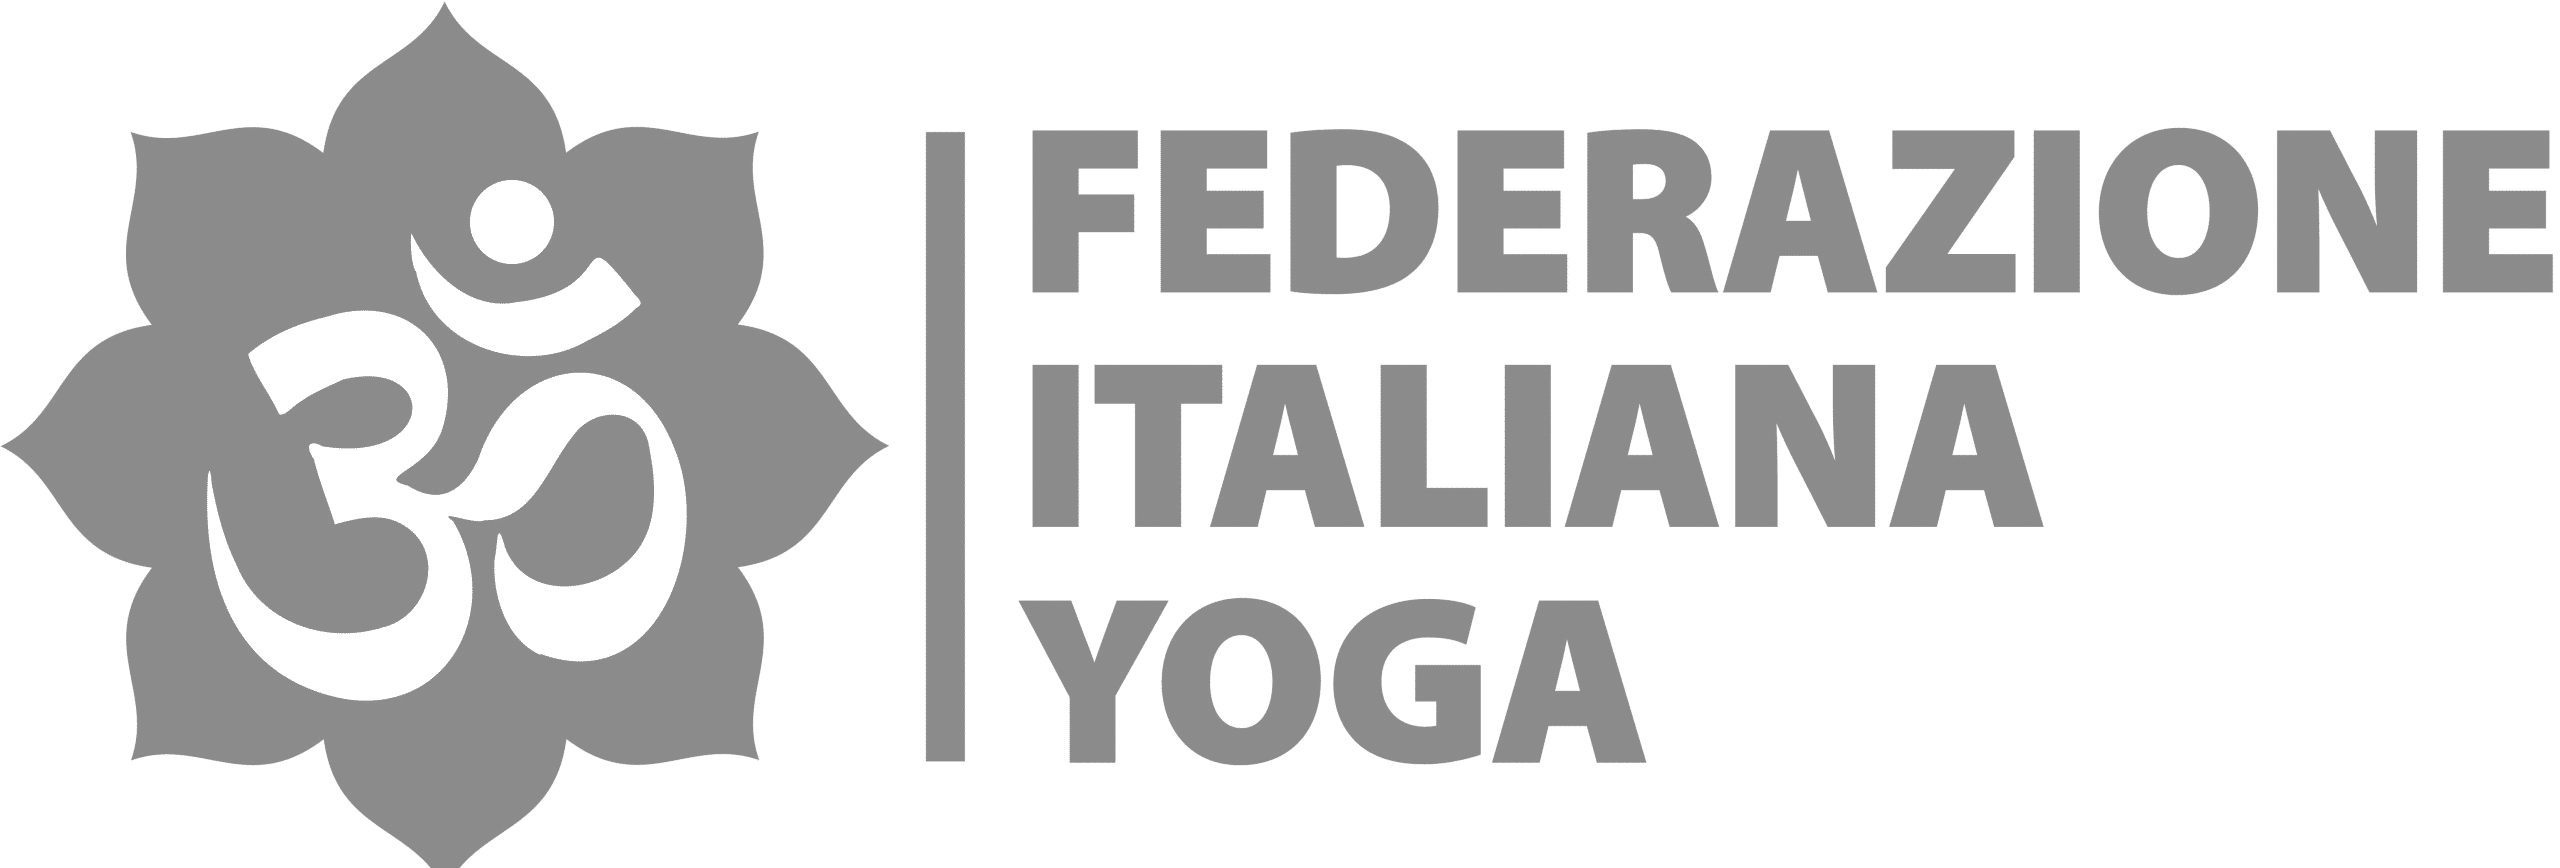 Federazione Italiana Yoga